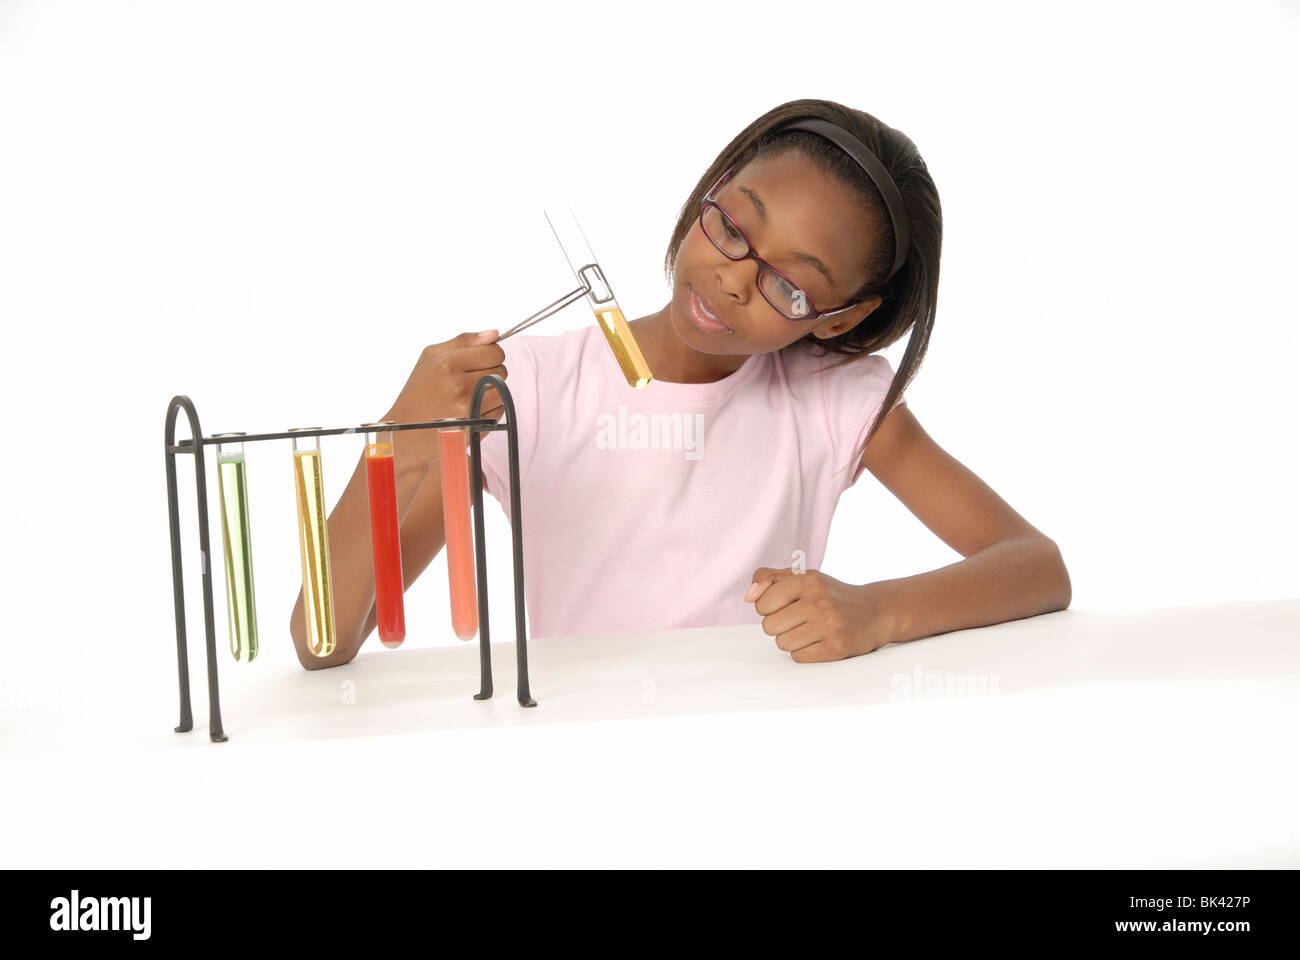 Zehn Jahre altes Mädchen, ein Student, eine wissenschaftliches Experiment mit Becher gefüllt mit bunten Flüssigkeit zu tun. Stockfoto